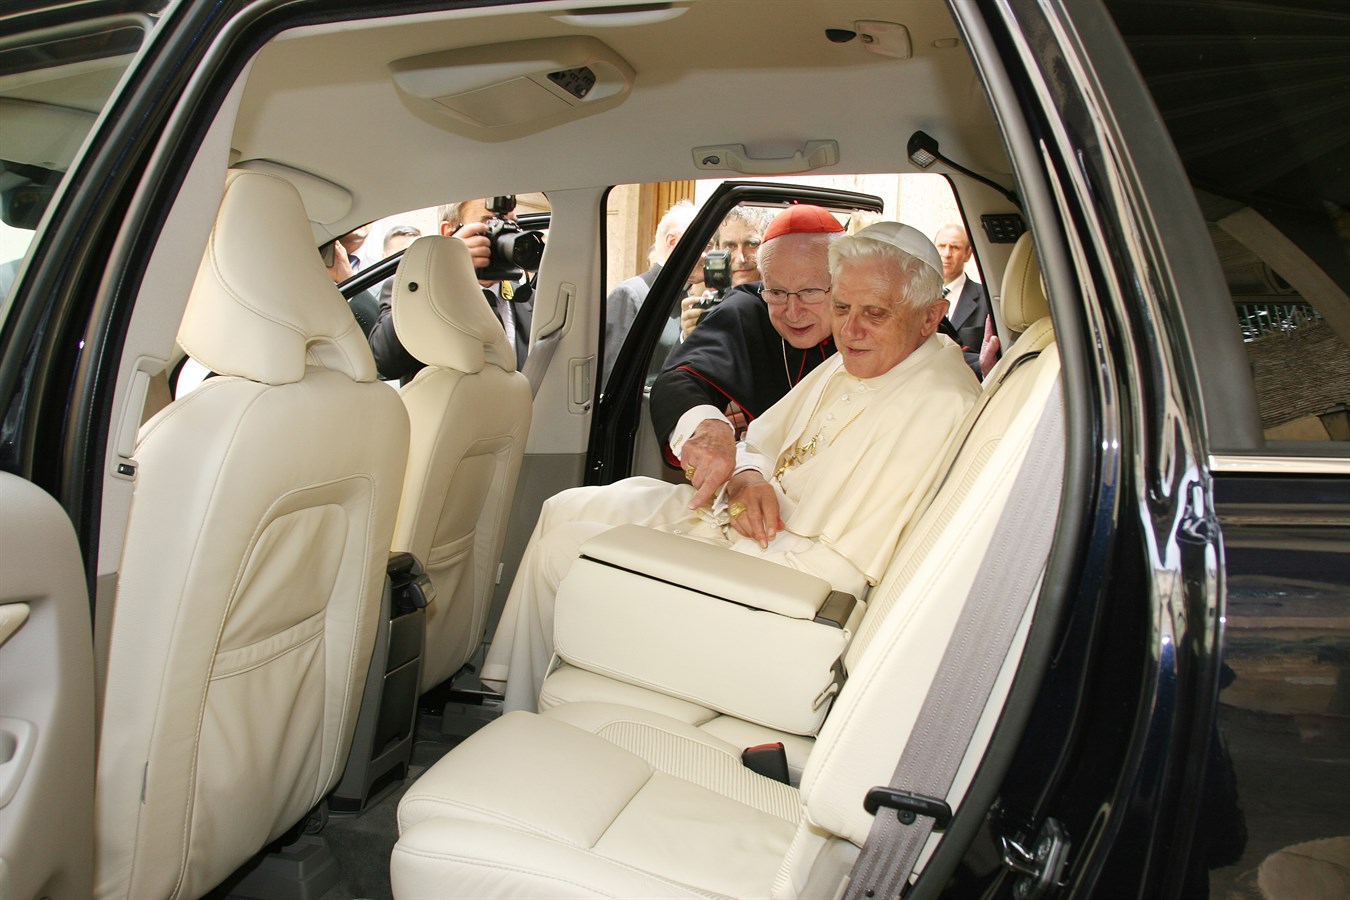 Mercoledì 28 giugno 2006, Volvo Cars ha fatto omaggio di una Volvo XC90 a Sua Santità papa Benedetto XVI